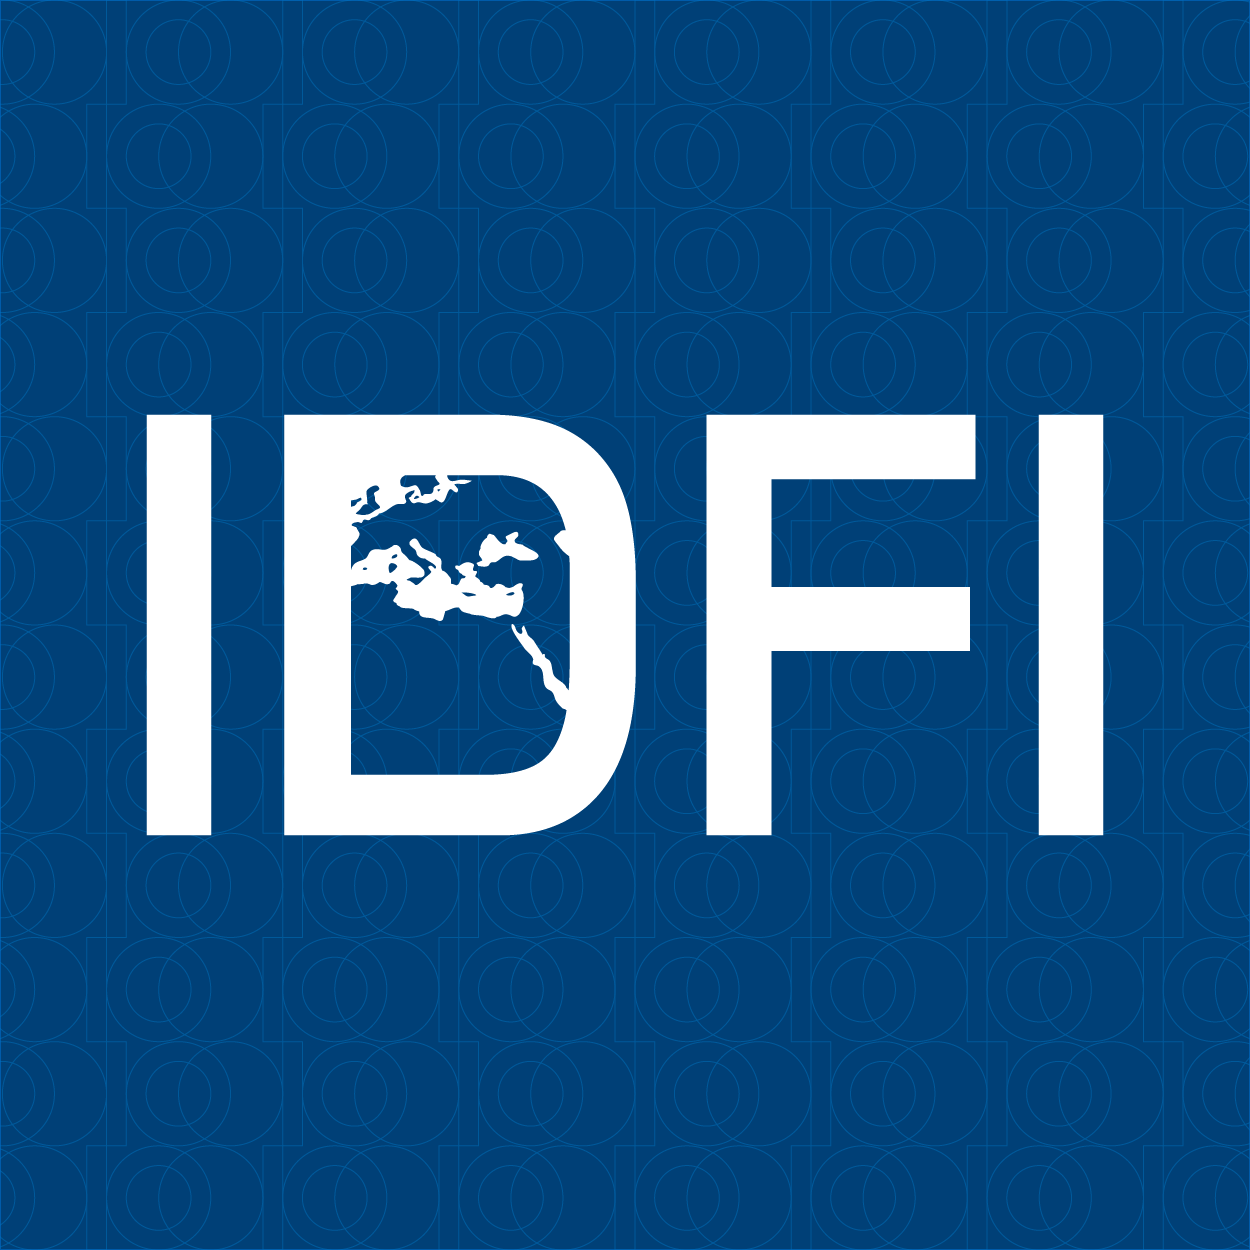 ინფორმაციის თავისუფლების განვითარების ინსტიტუტი (IDFI)